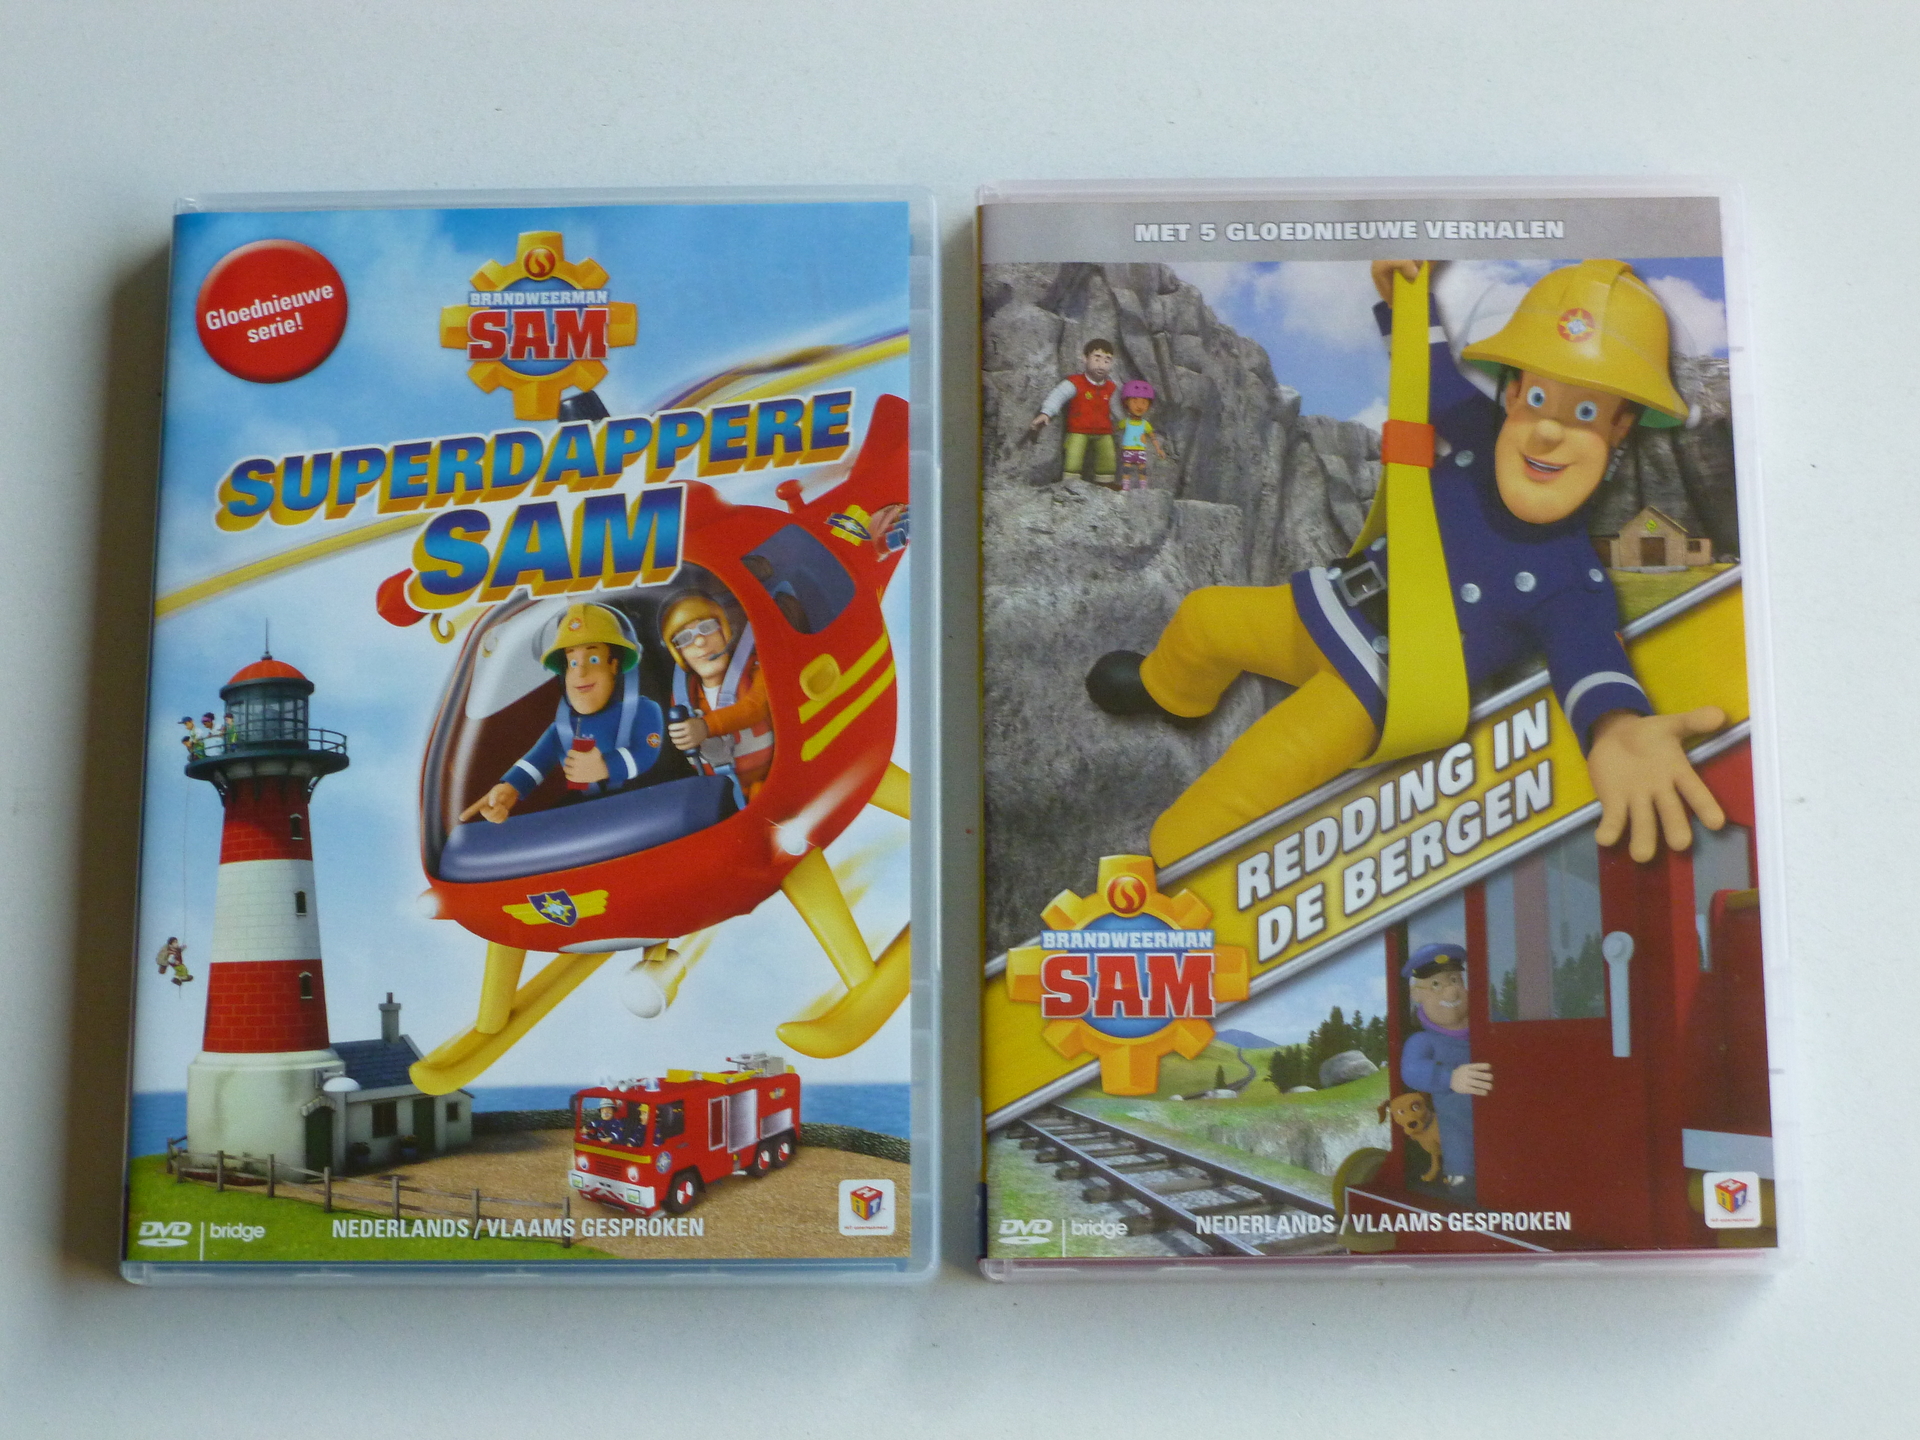 open haard Annoteren Tot Brandweerman Sam - Redding in de Bergen + Superdappere Sam (2 DVD) -  Tweedehands CD